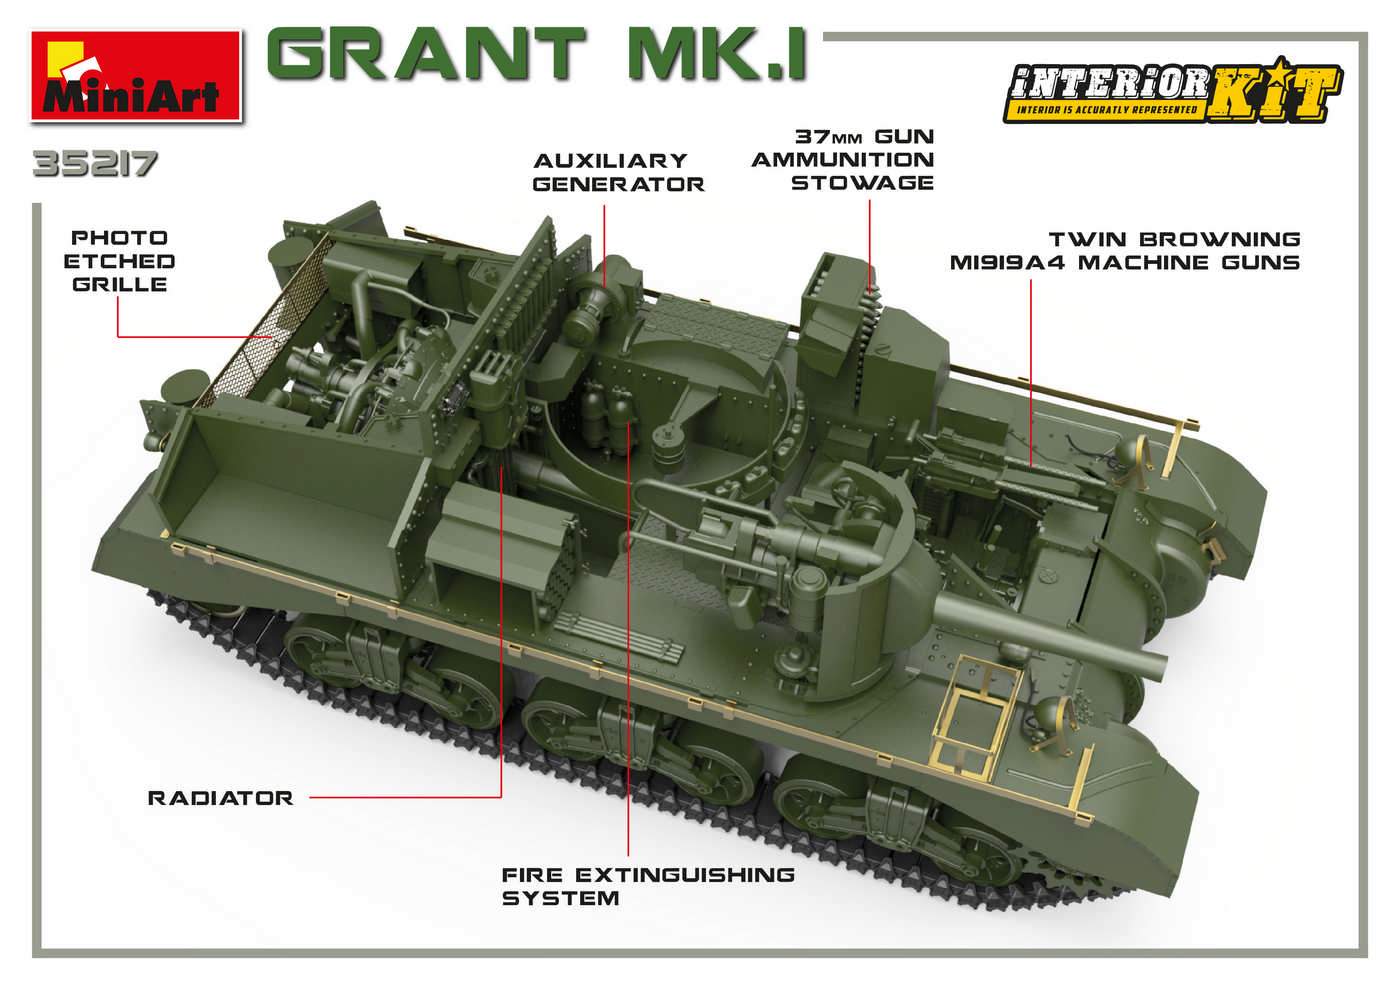 Miniart Military 1 35 M3 Grant Mk1 Tank W Full Interior New Tool Kit